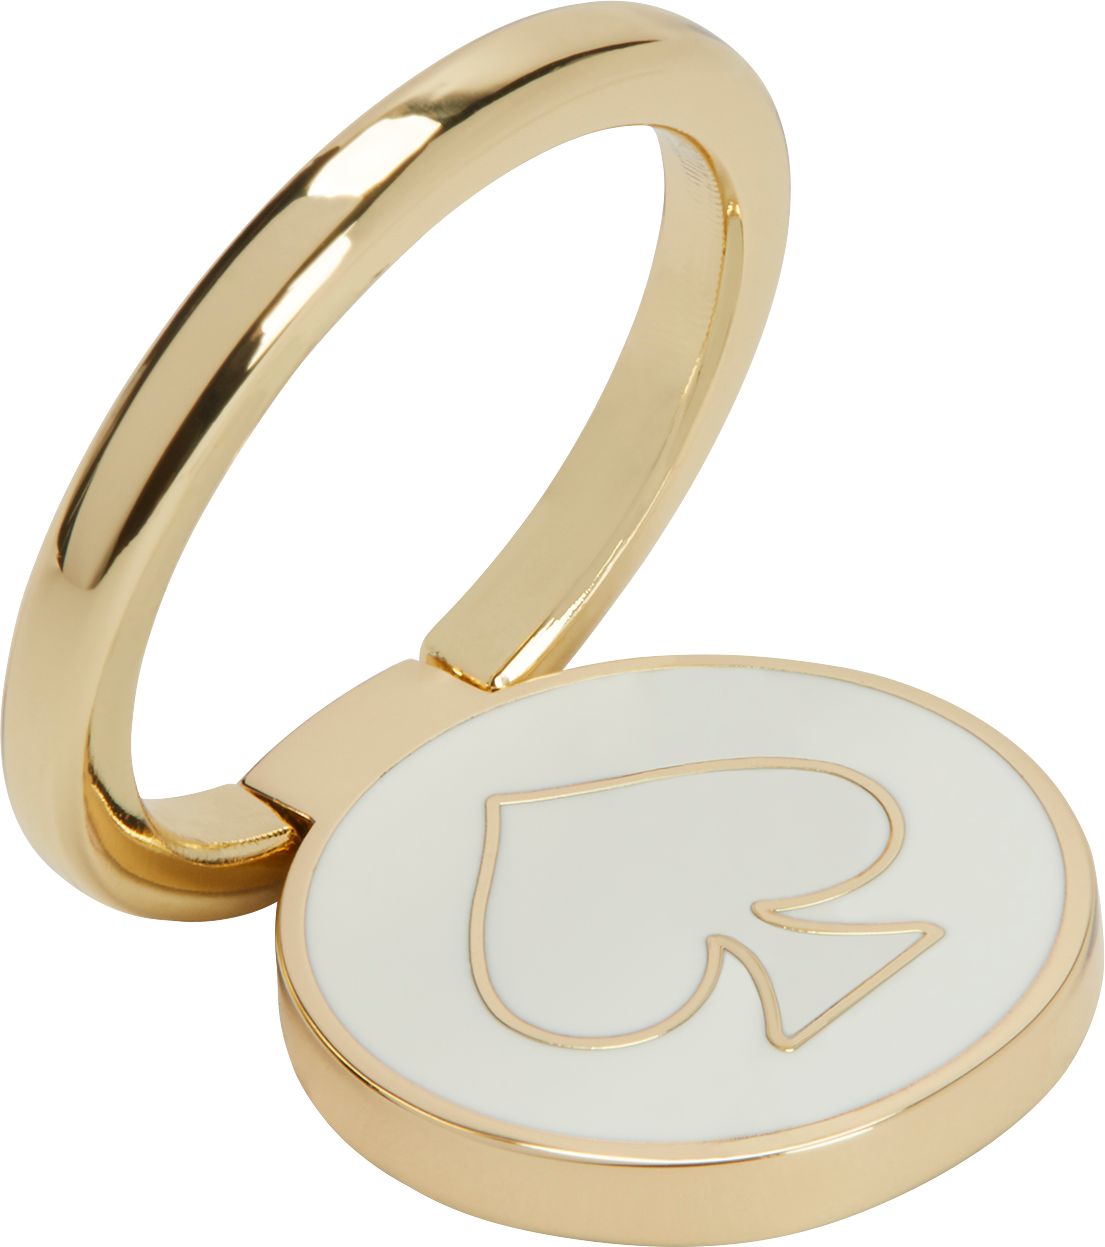 kate spade new york Universal Stability Ring Gold/Cream KSUNV-001-GCRM -  Best Buy